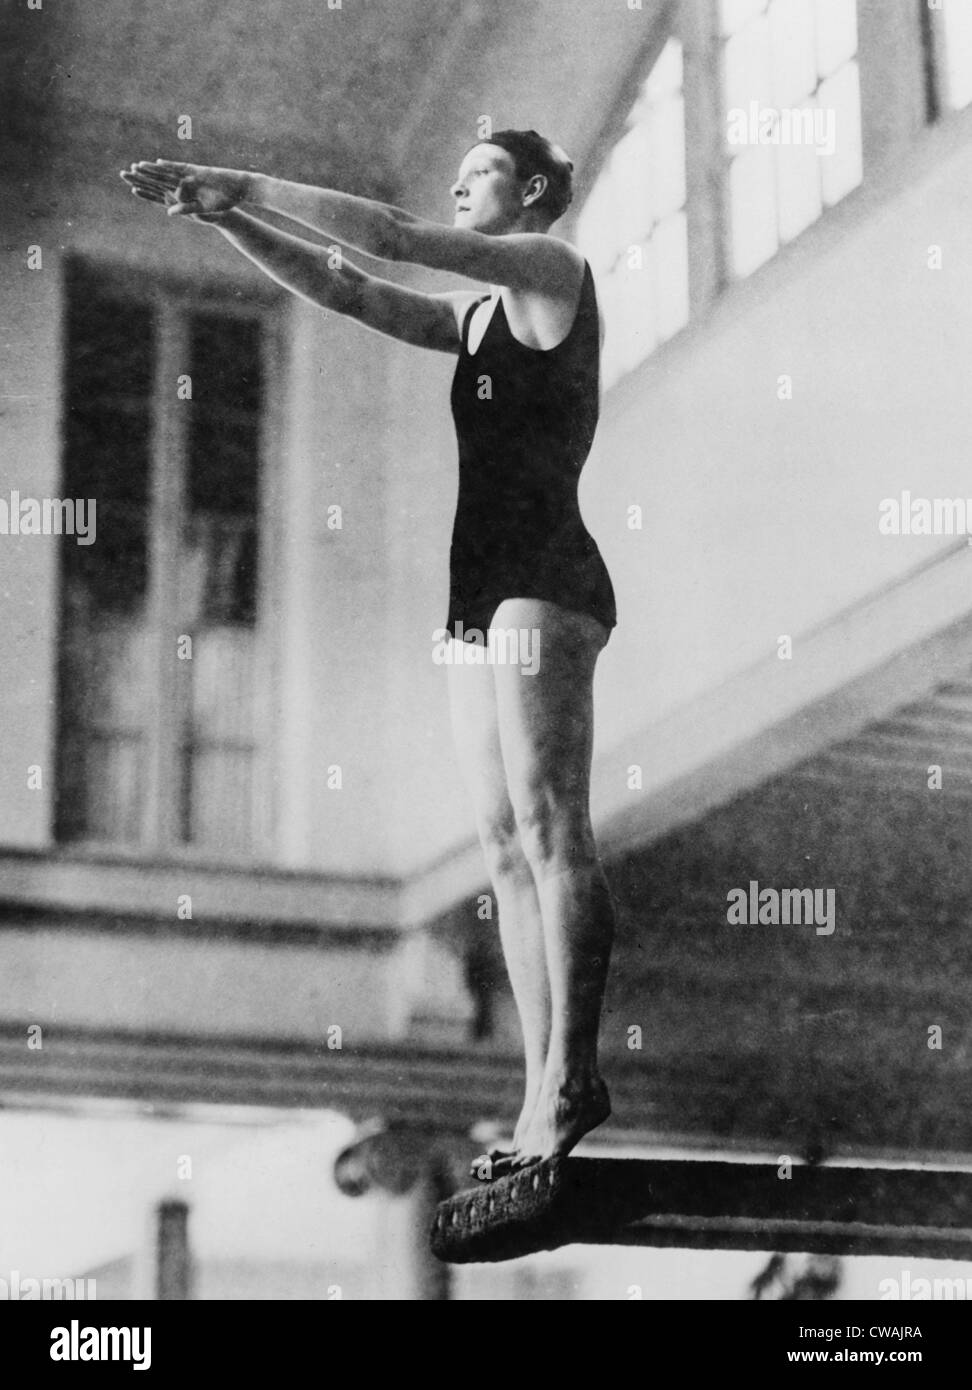 Il Babe Didrikson Zaharias (1911-1956) la più versatile delle donne professionali atleta del XX secolo. Ella ha gareggiato Foto Stock